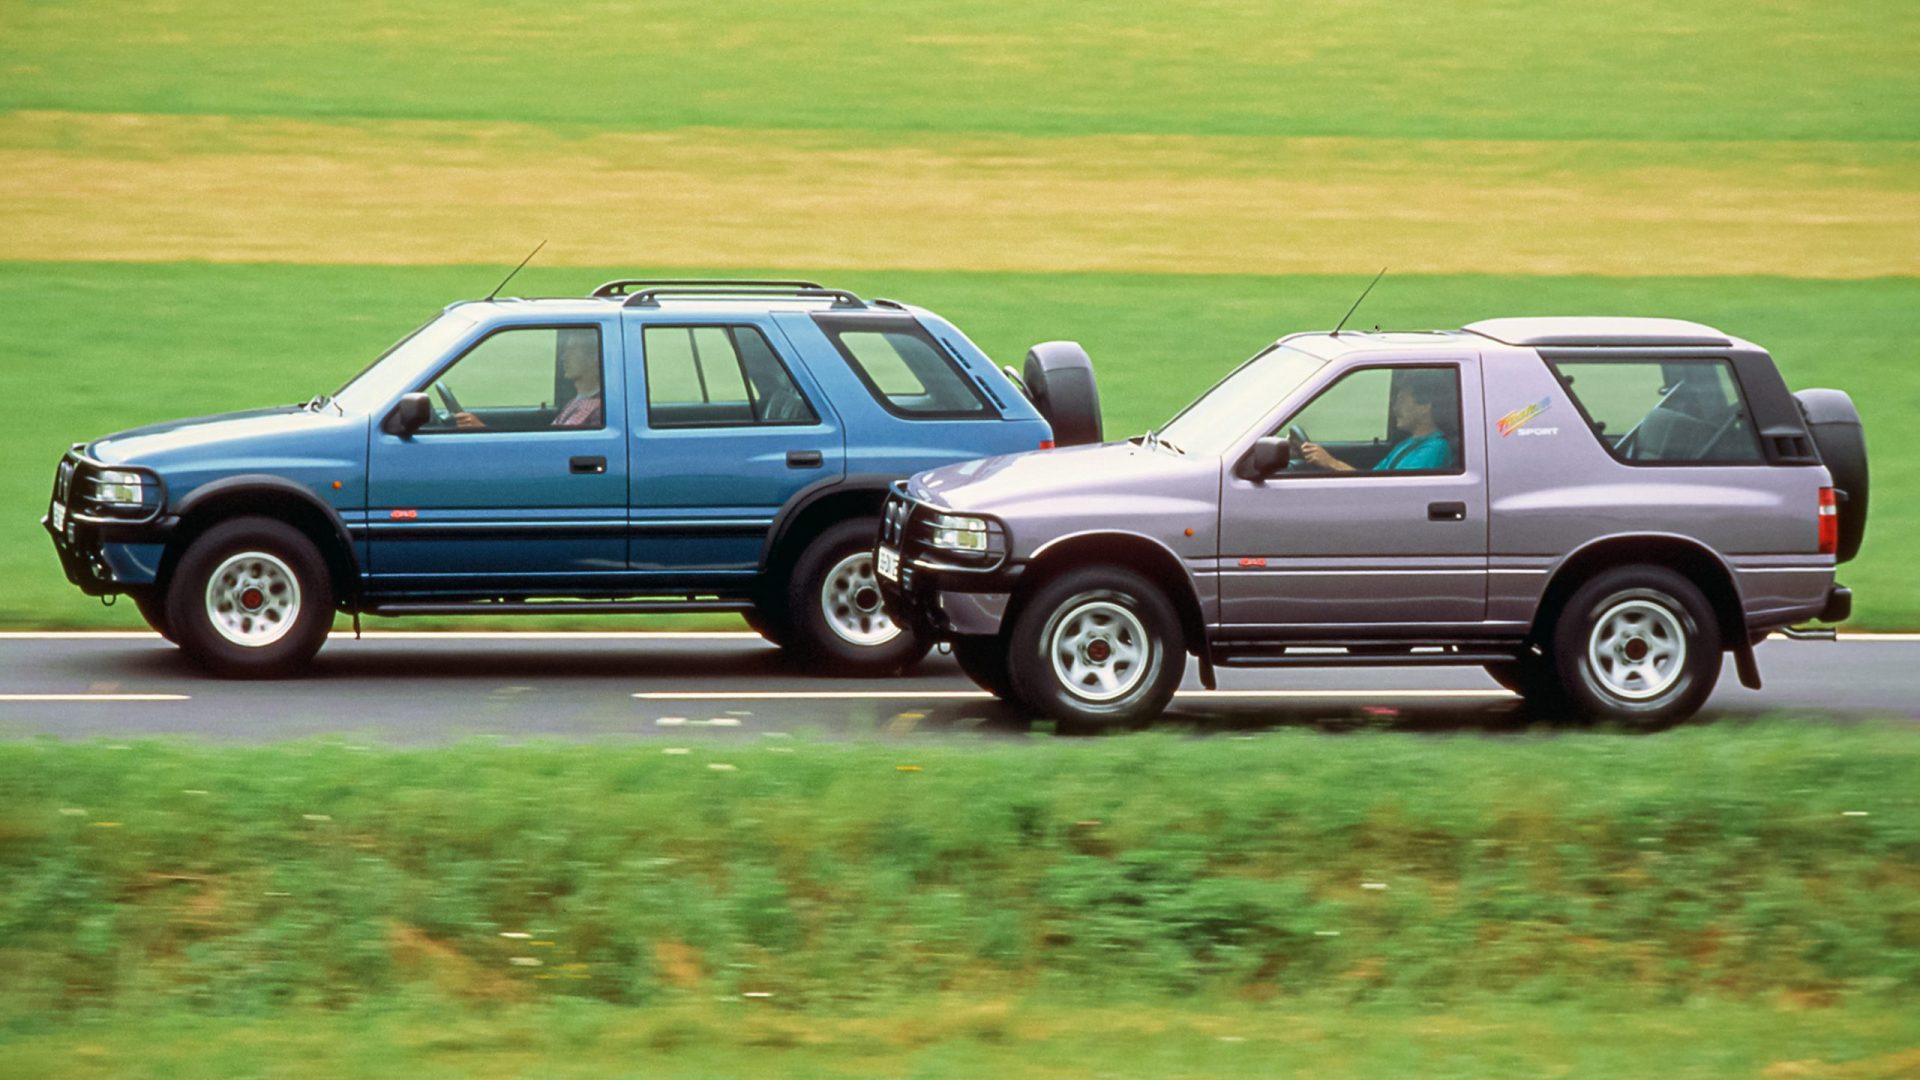 Opel Frontera ma już 30 lat. To pierwszy, rekreacyjny